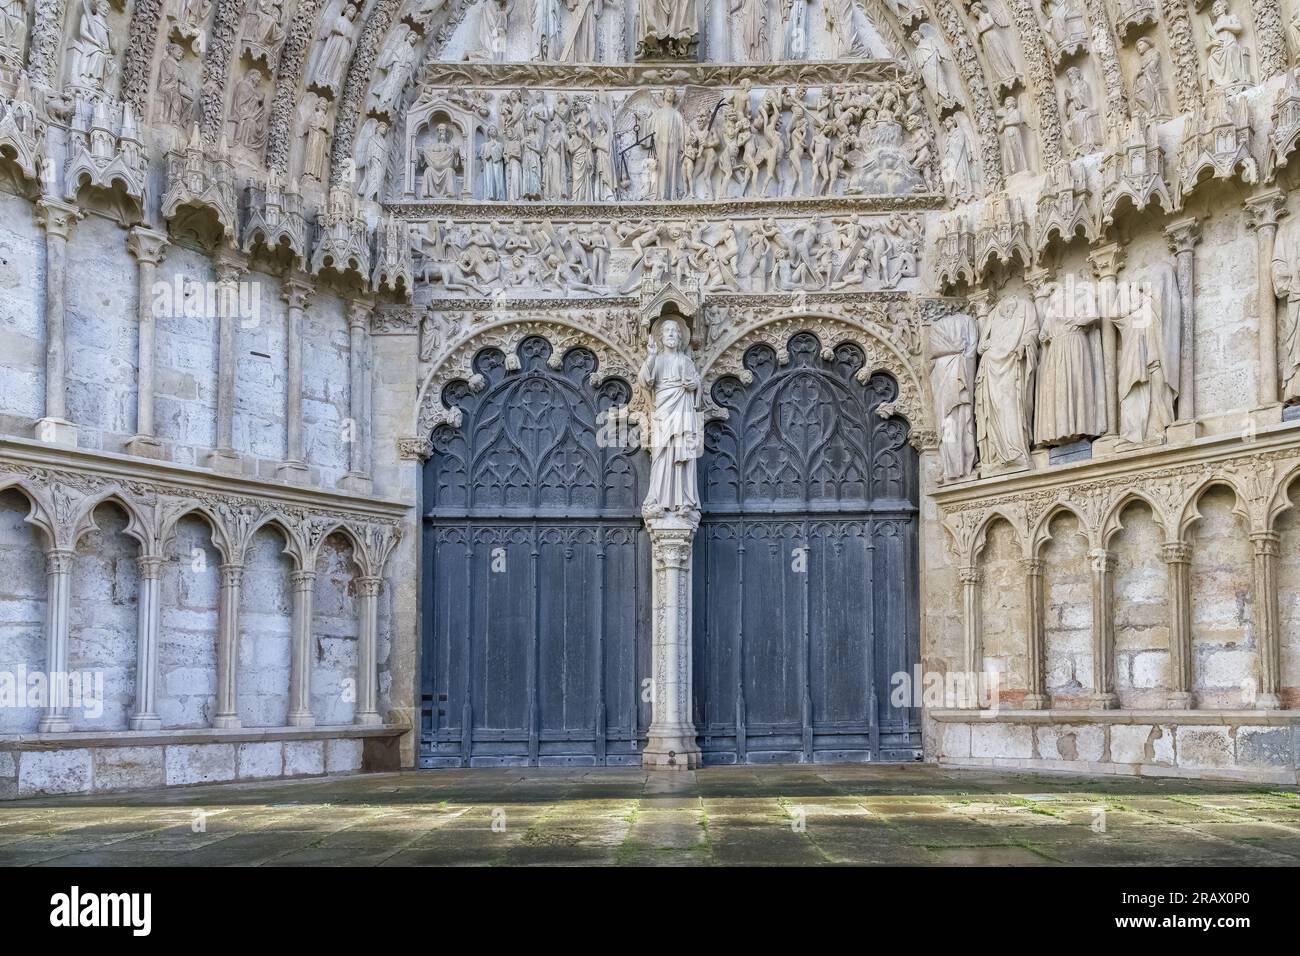 Bourges, cité médiévale en France, cathédrale Saint-Etienne, entrée principale Banque D'Images